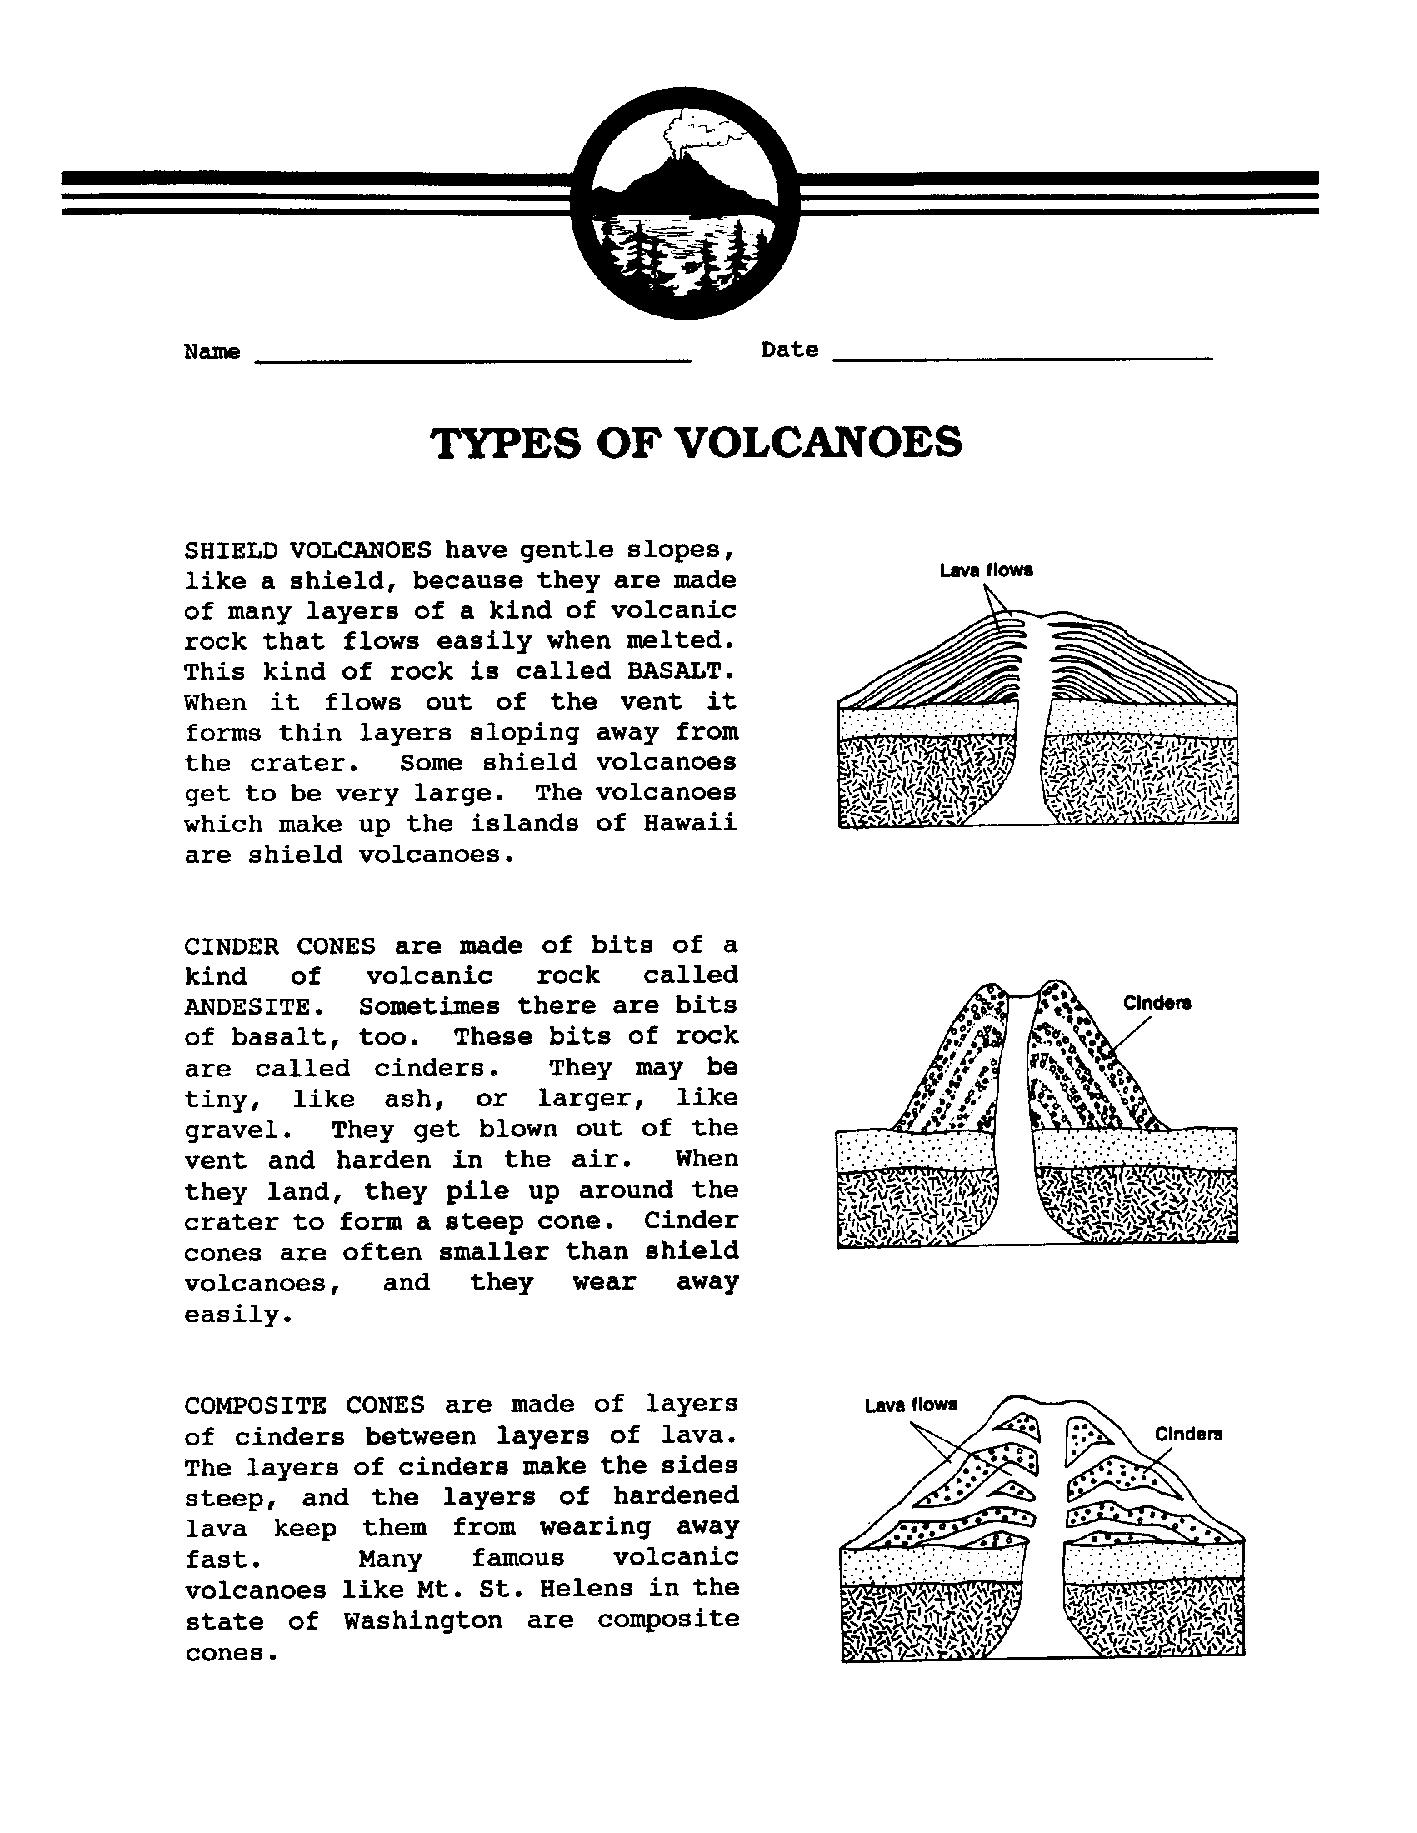 Types of Volcanoes Worksheet Image